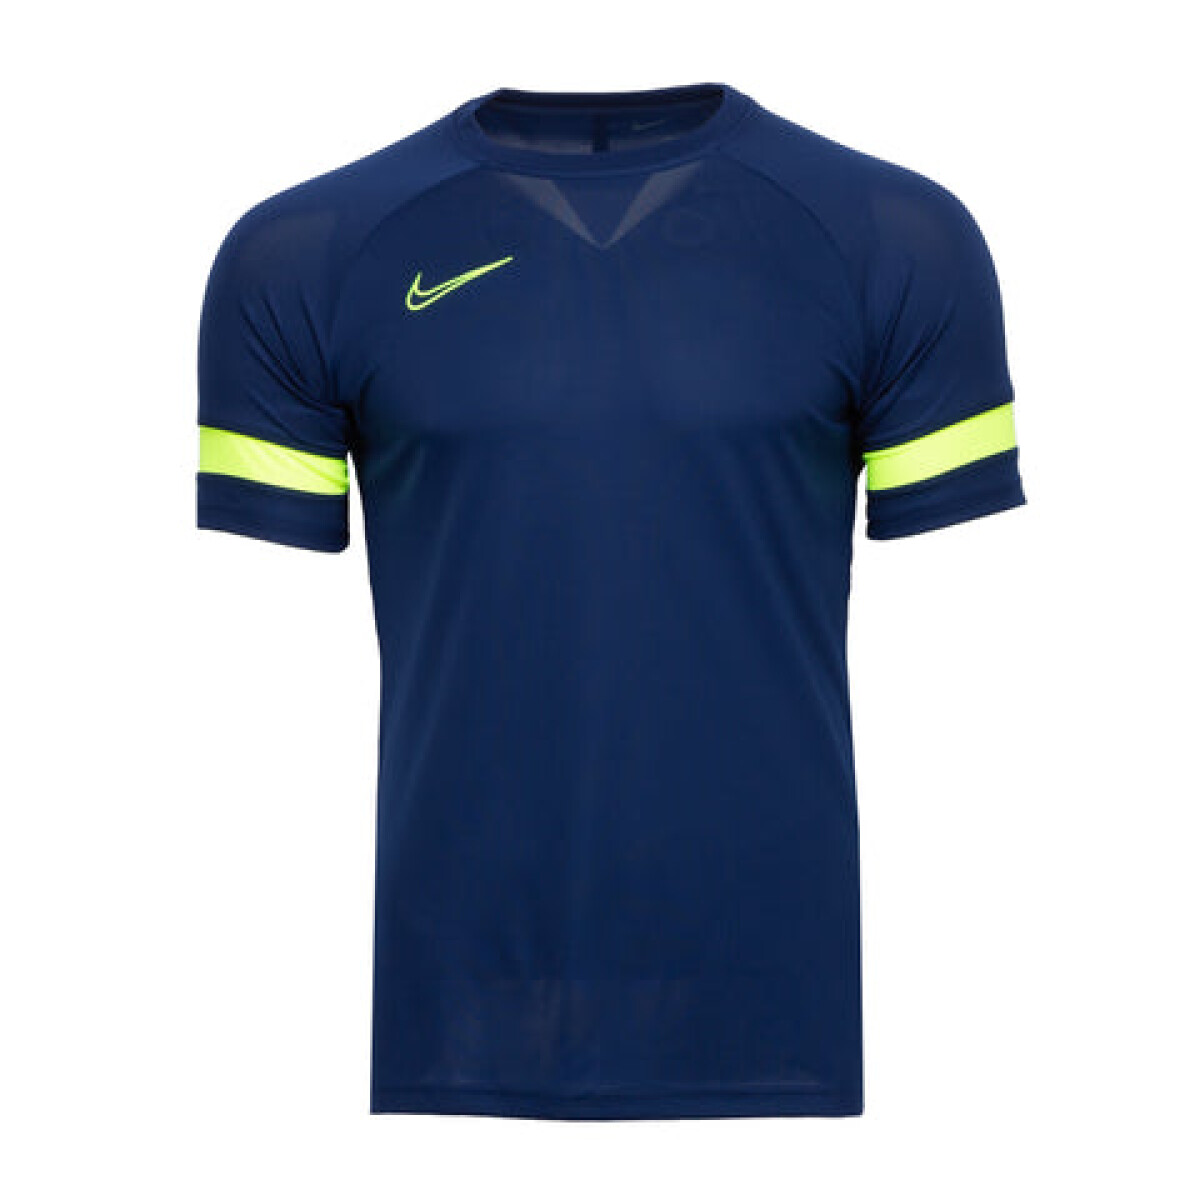 Remera Nike Futbol Hombre ACD21 - S/C 